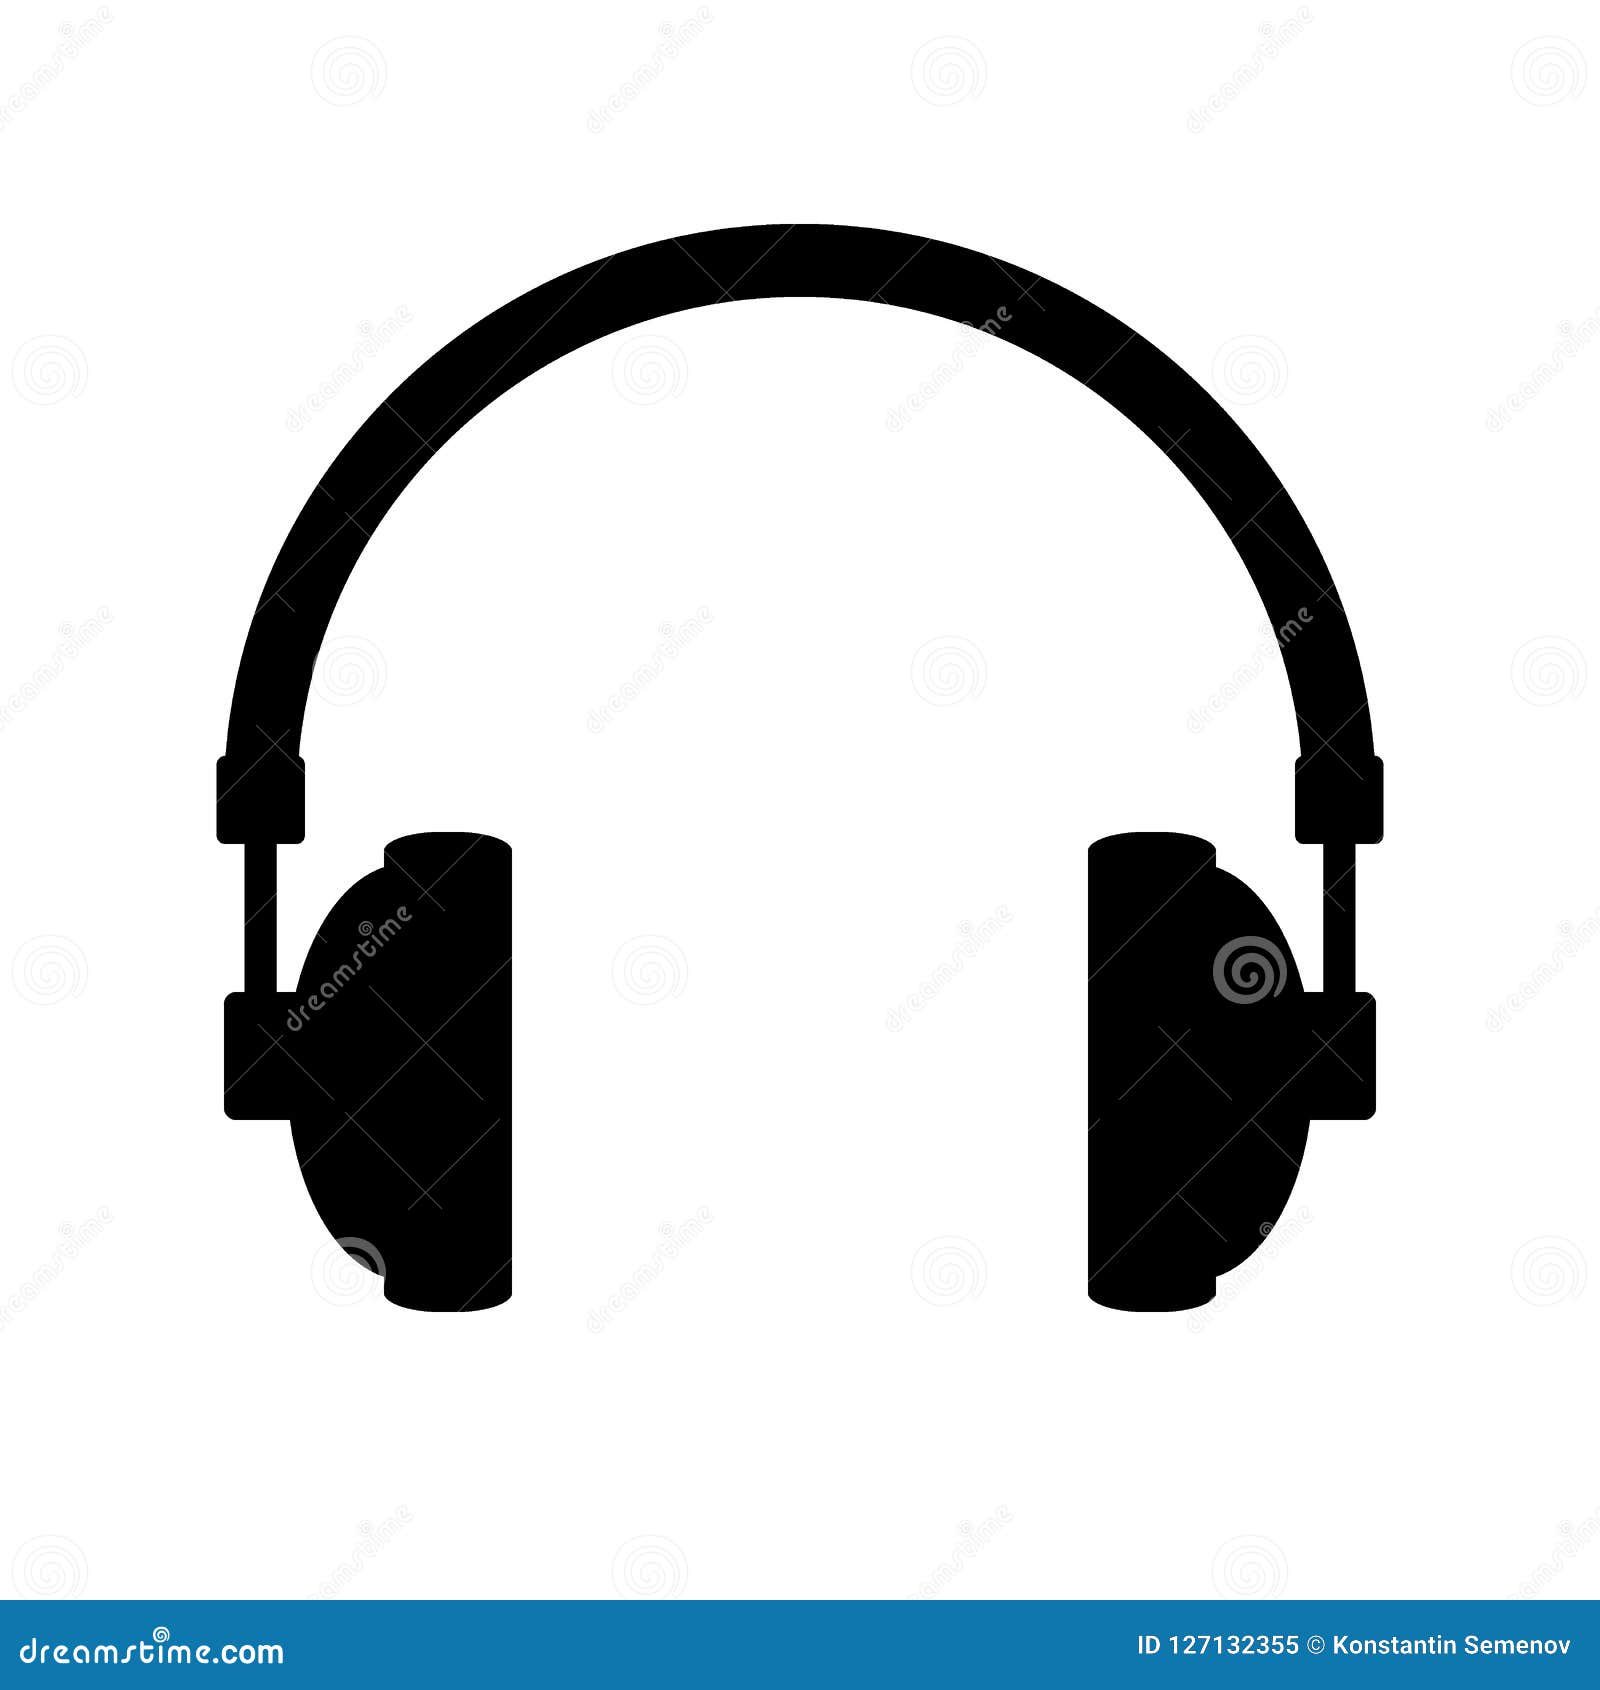 headphones icon on white.